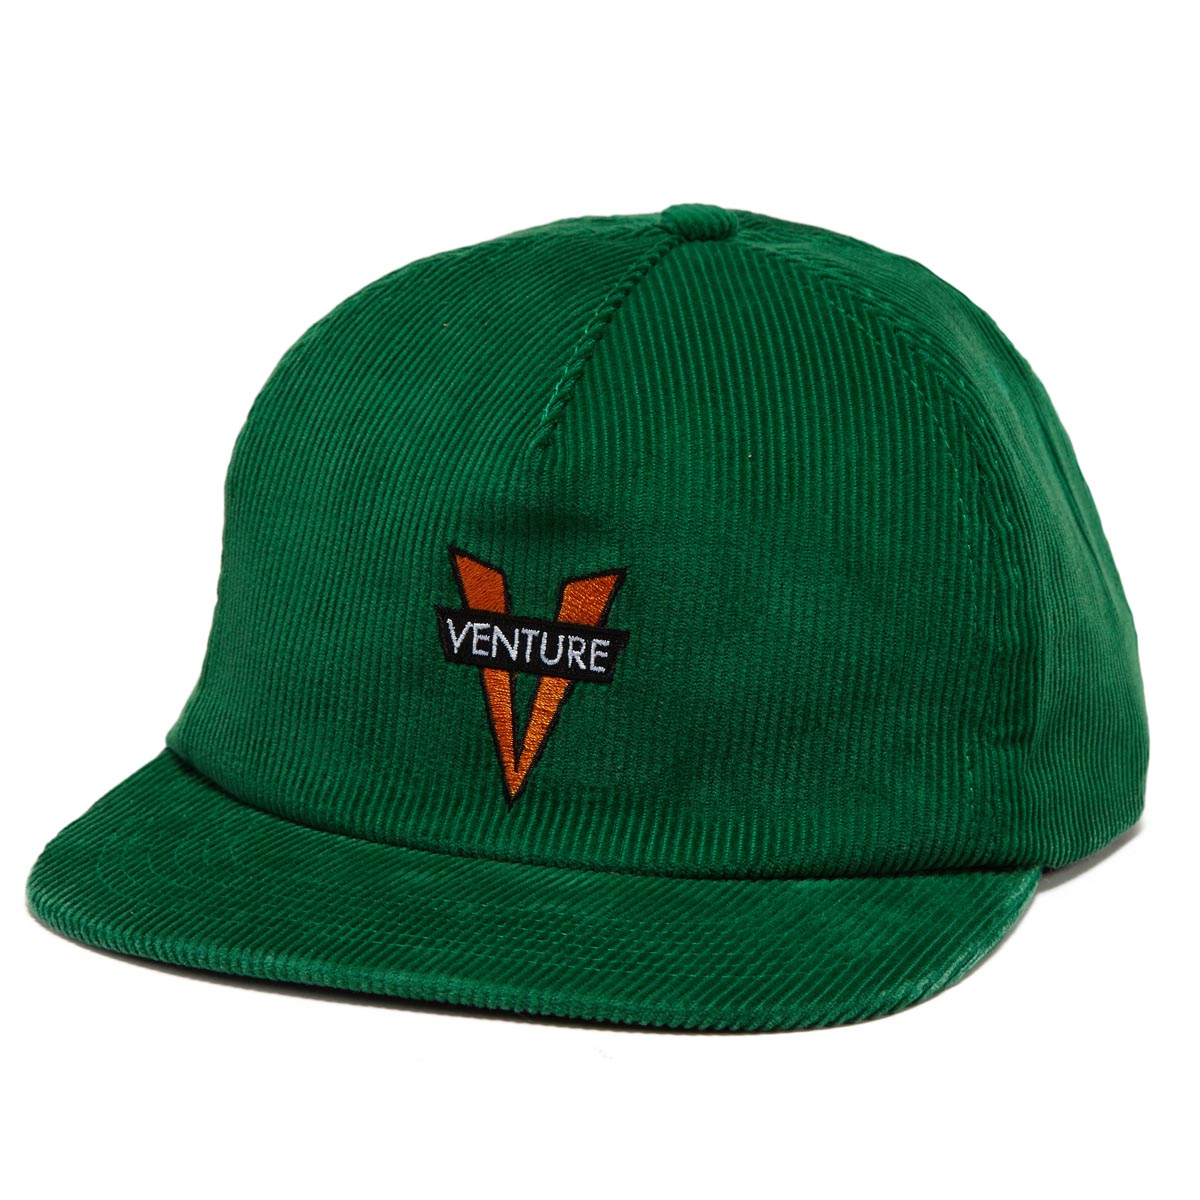 Venture Heritage Hat - Dark Green image 1